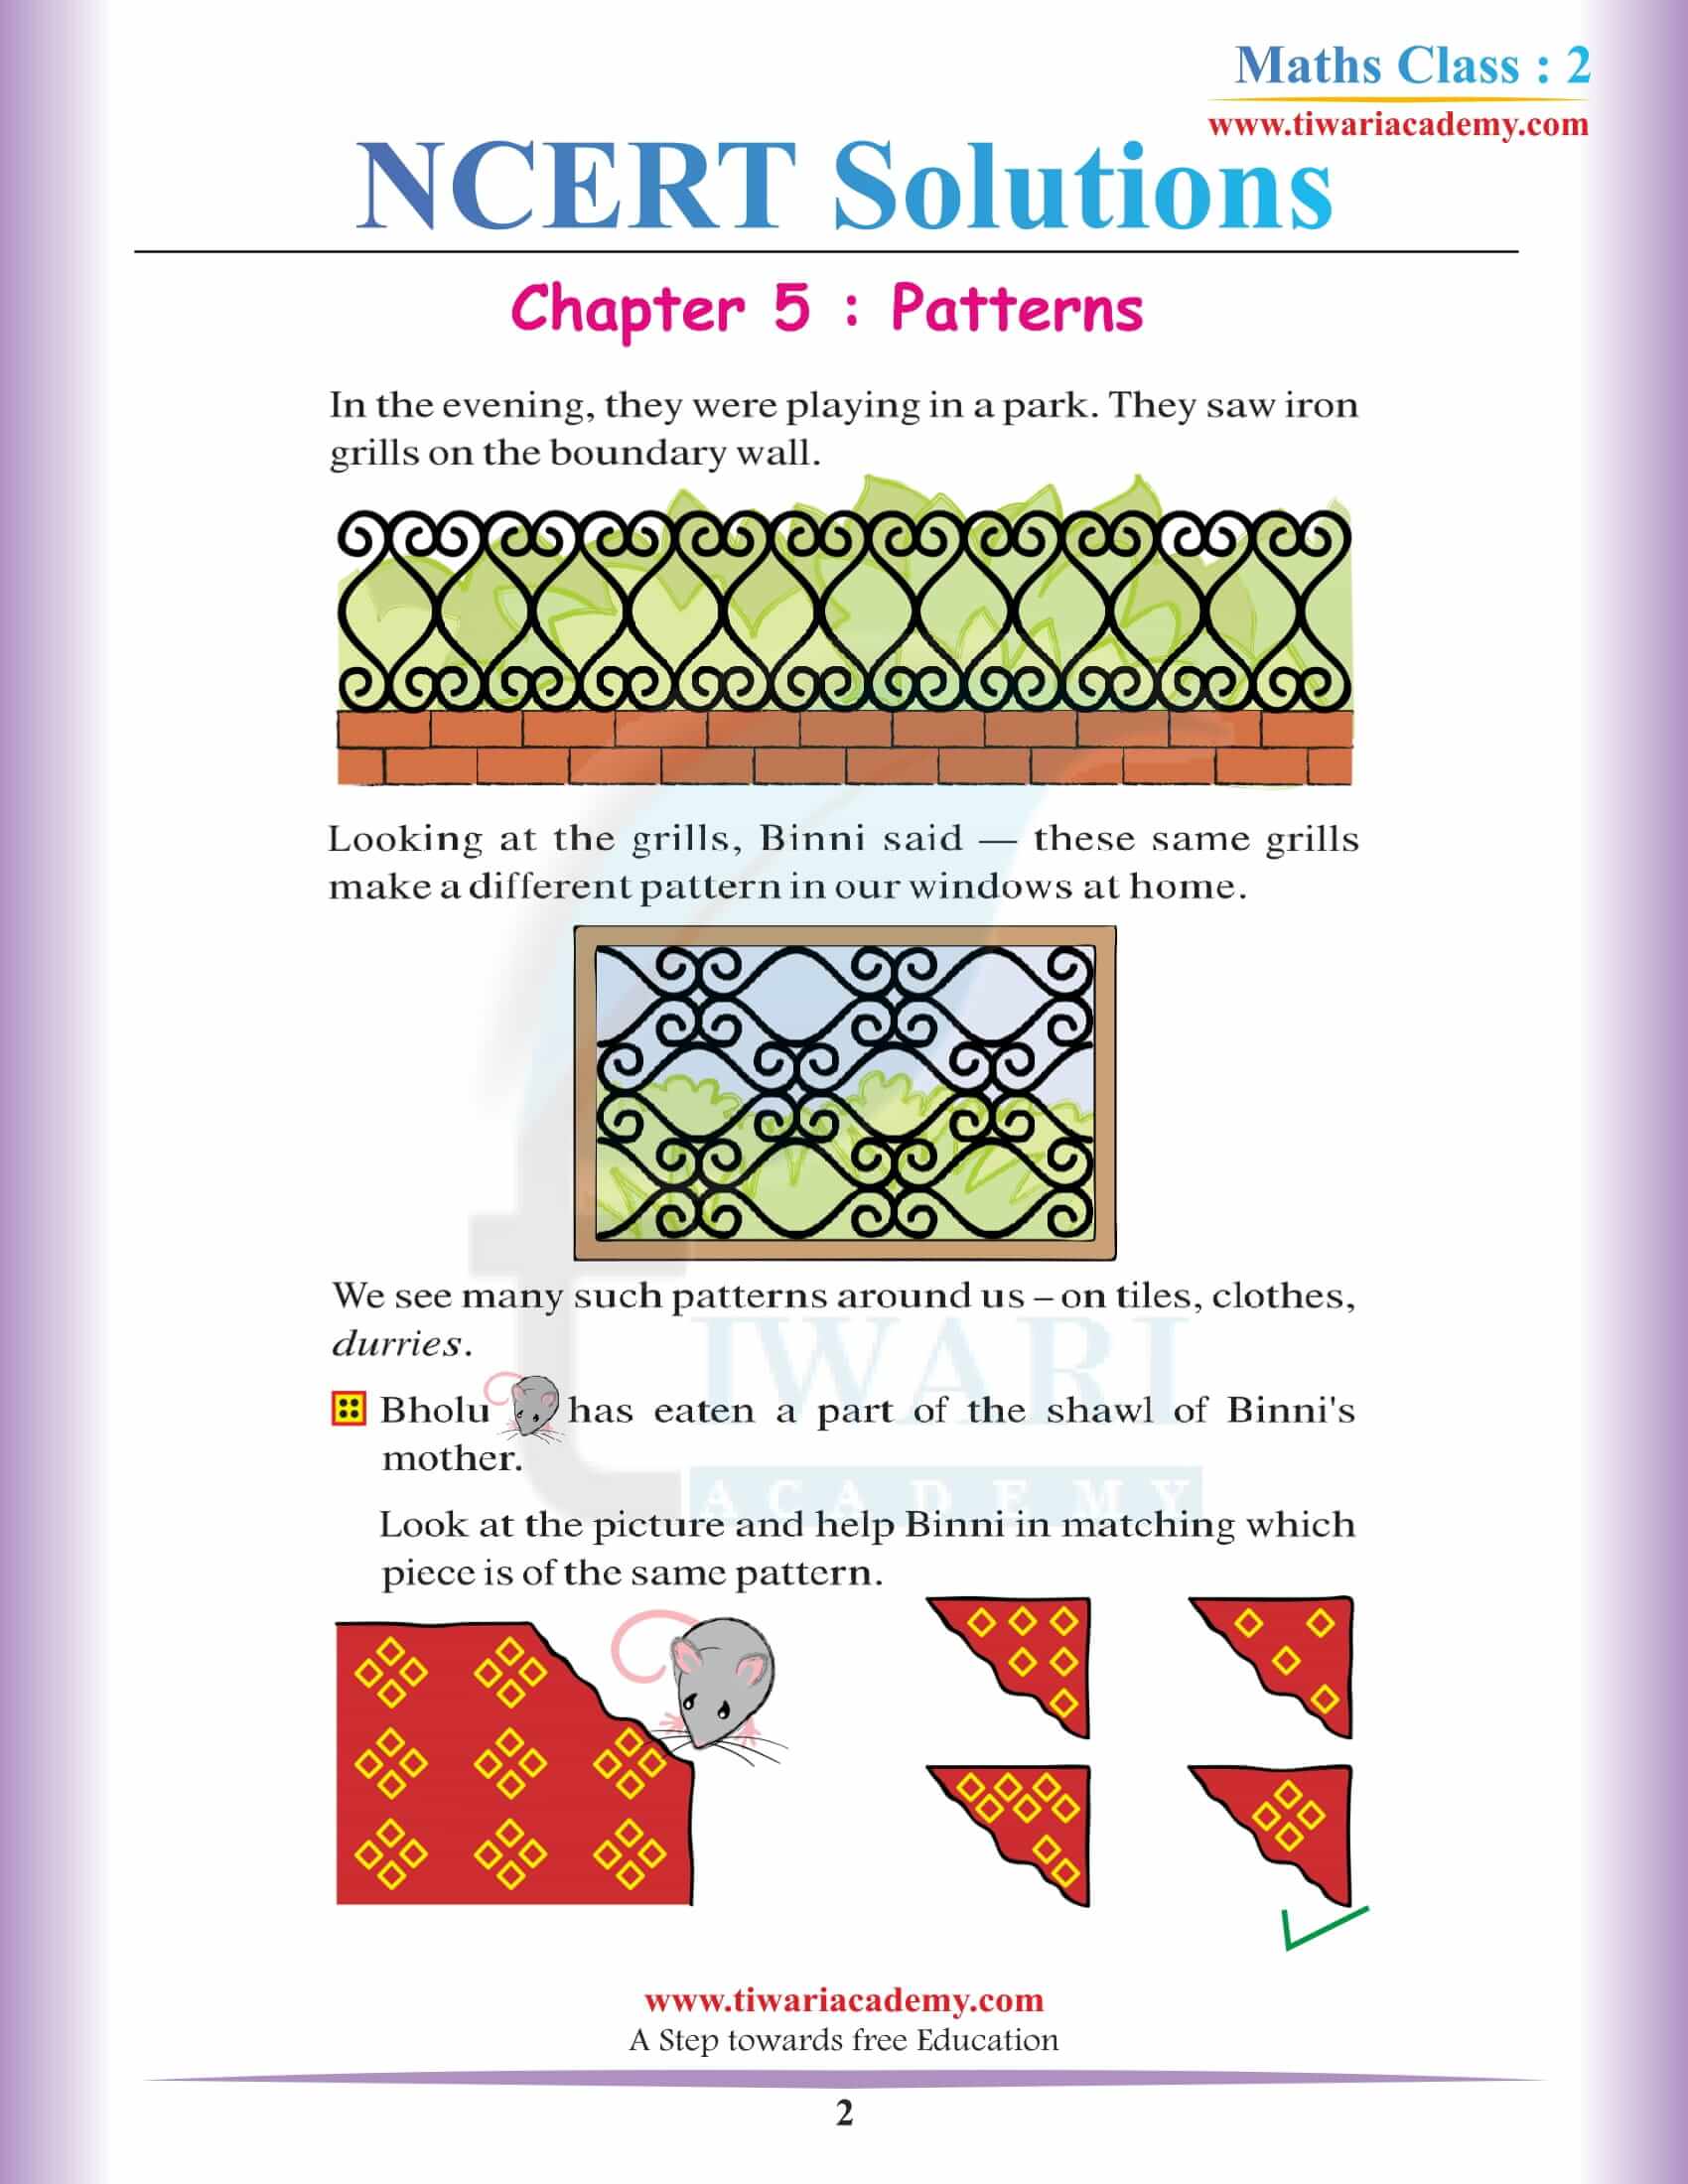 NCERT Solutions for Class 2 Maths Chapter 5